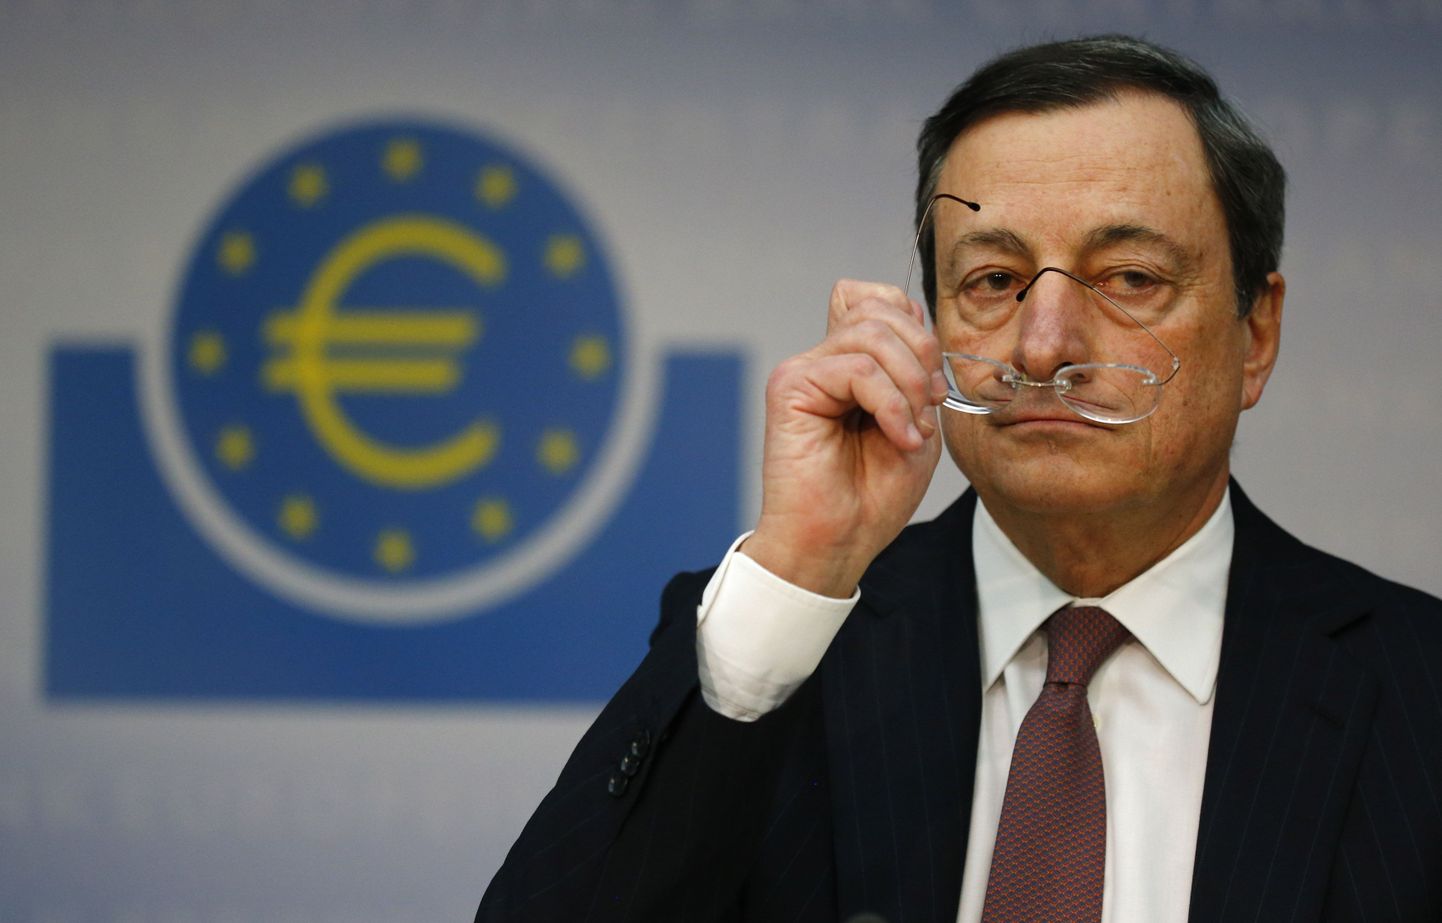 Euroopa Keskpanga president Mario Draghi eilse nõukogu koosoleku järgsel pressikonveterntsil.